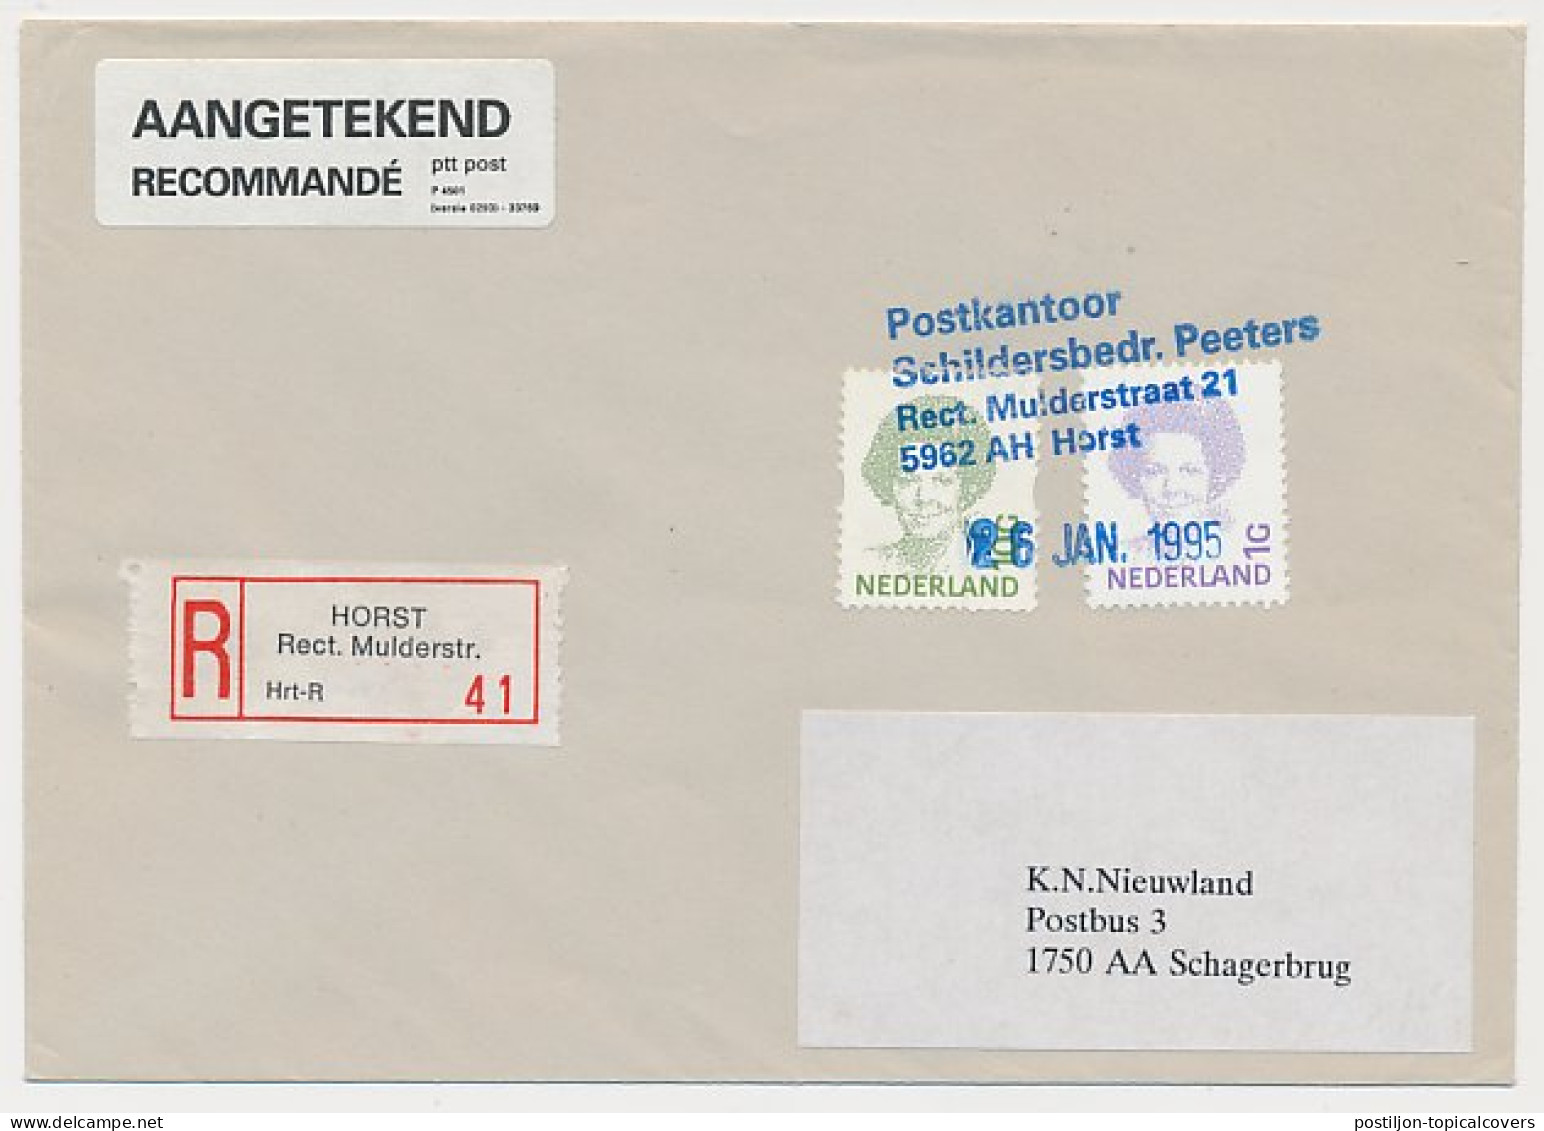 MiPag / Mini Postagentschap Aangetekend Horst 1995 - Ohne Zuordnung